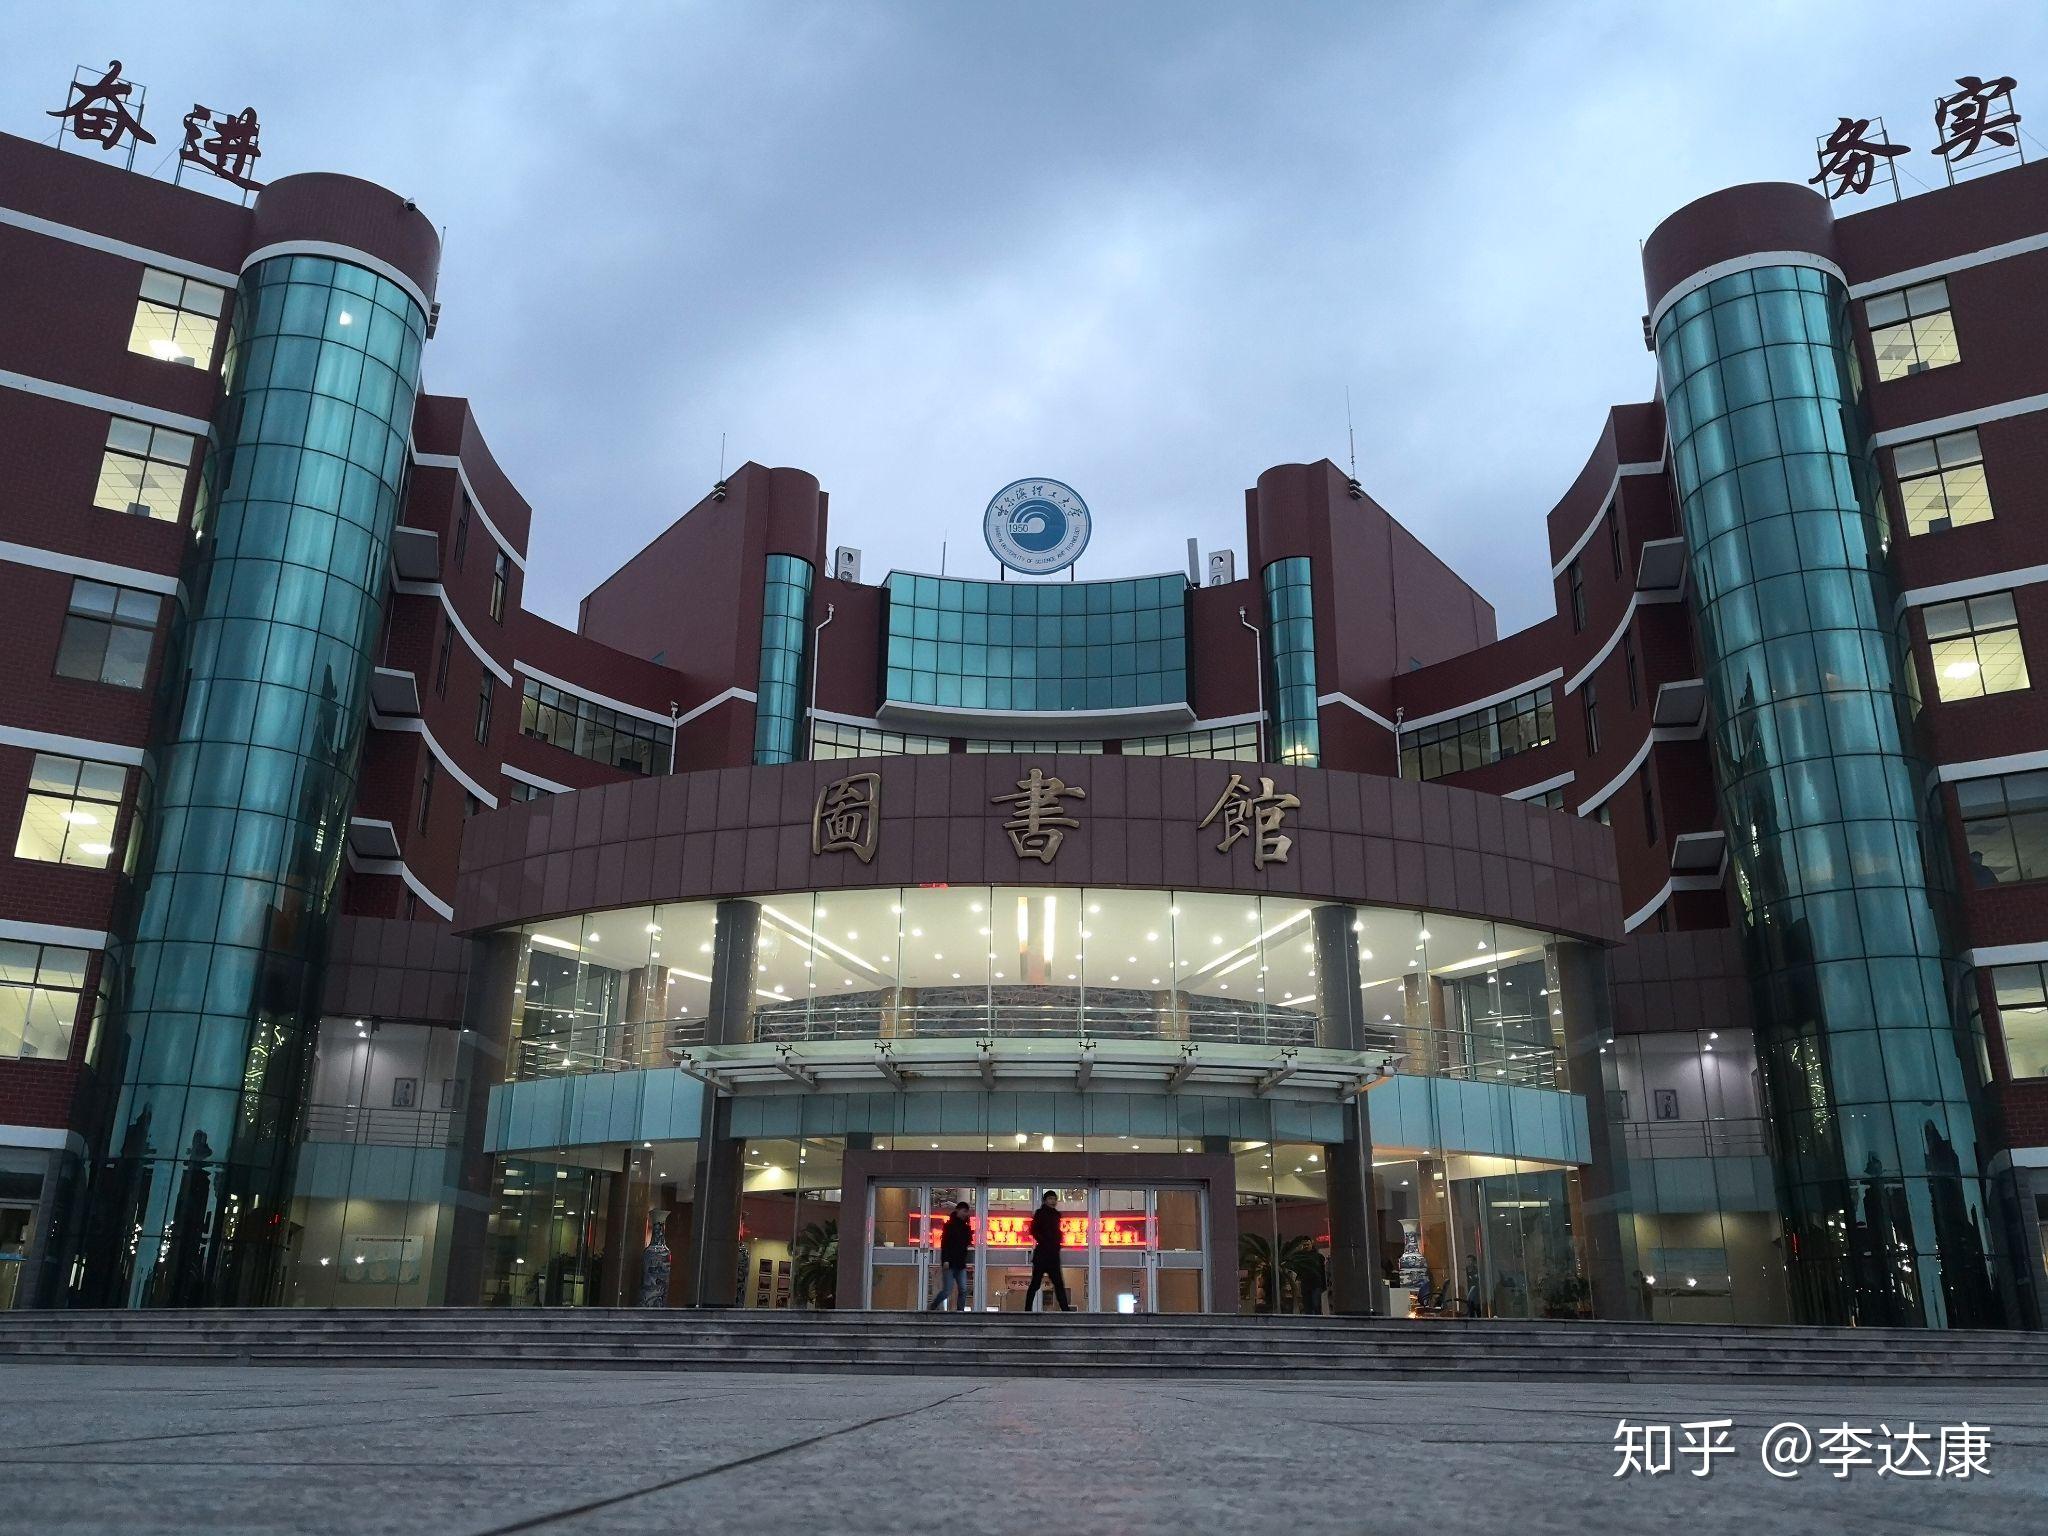 你认为哈尔滨理工大学荣成校区是一所什么样的学校? 